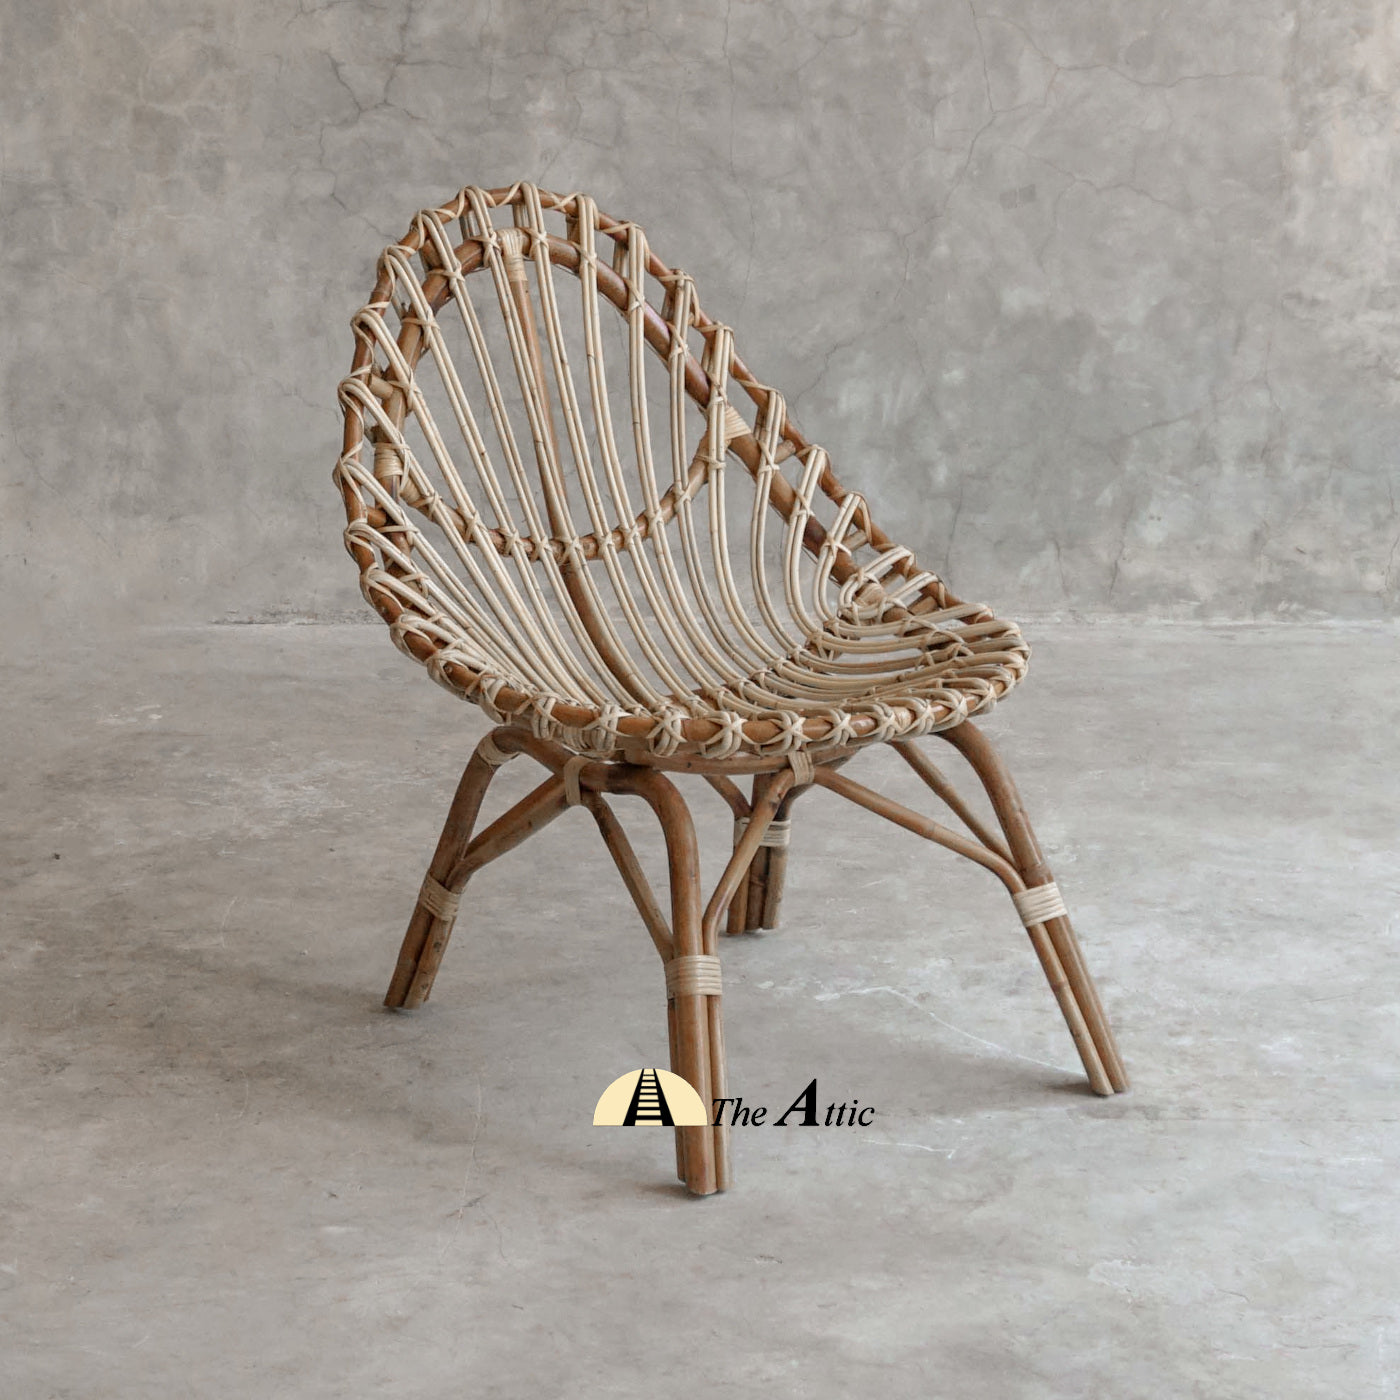 Malang Rattan Lounge Chair, Arm Chair, Rattan Wicker Furniture - The Attic Dubai